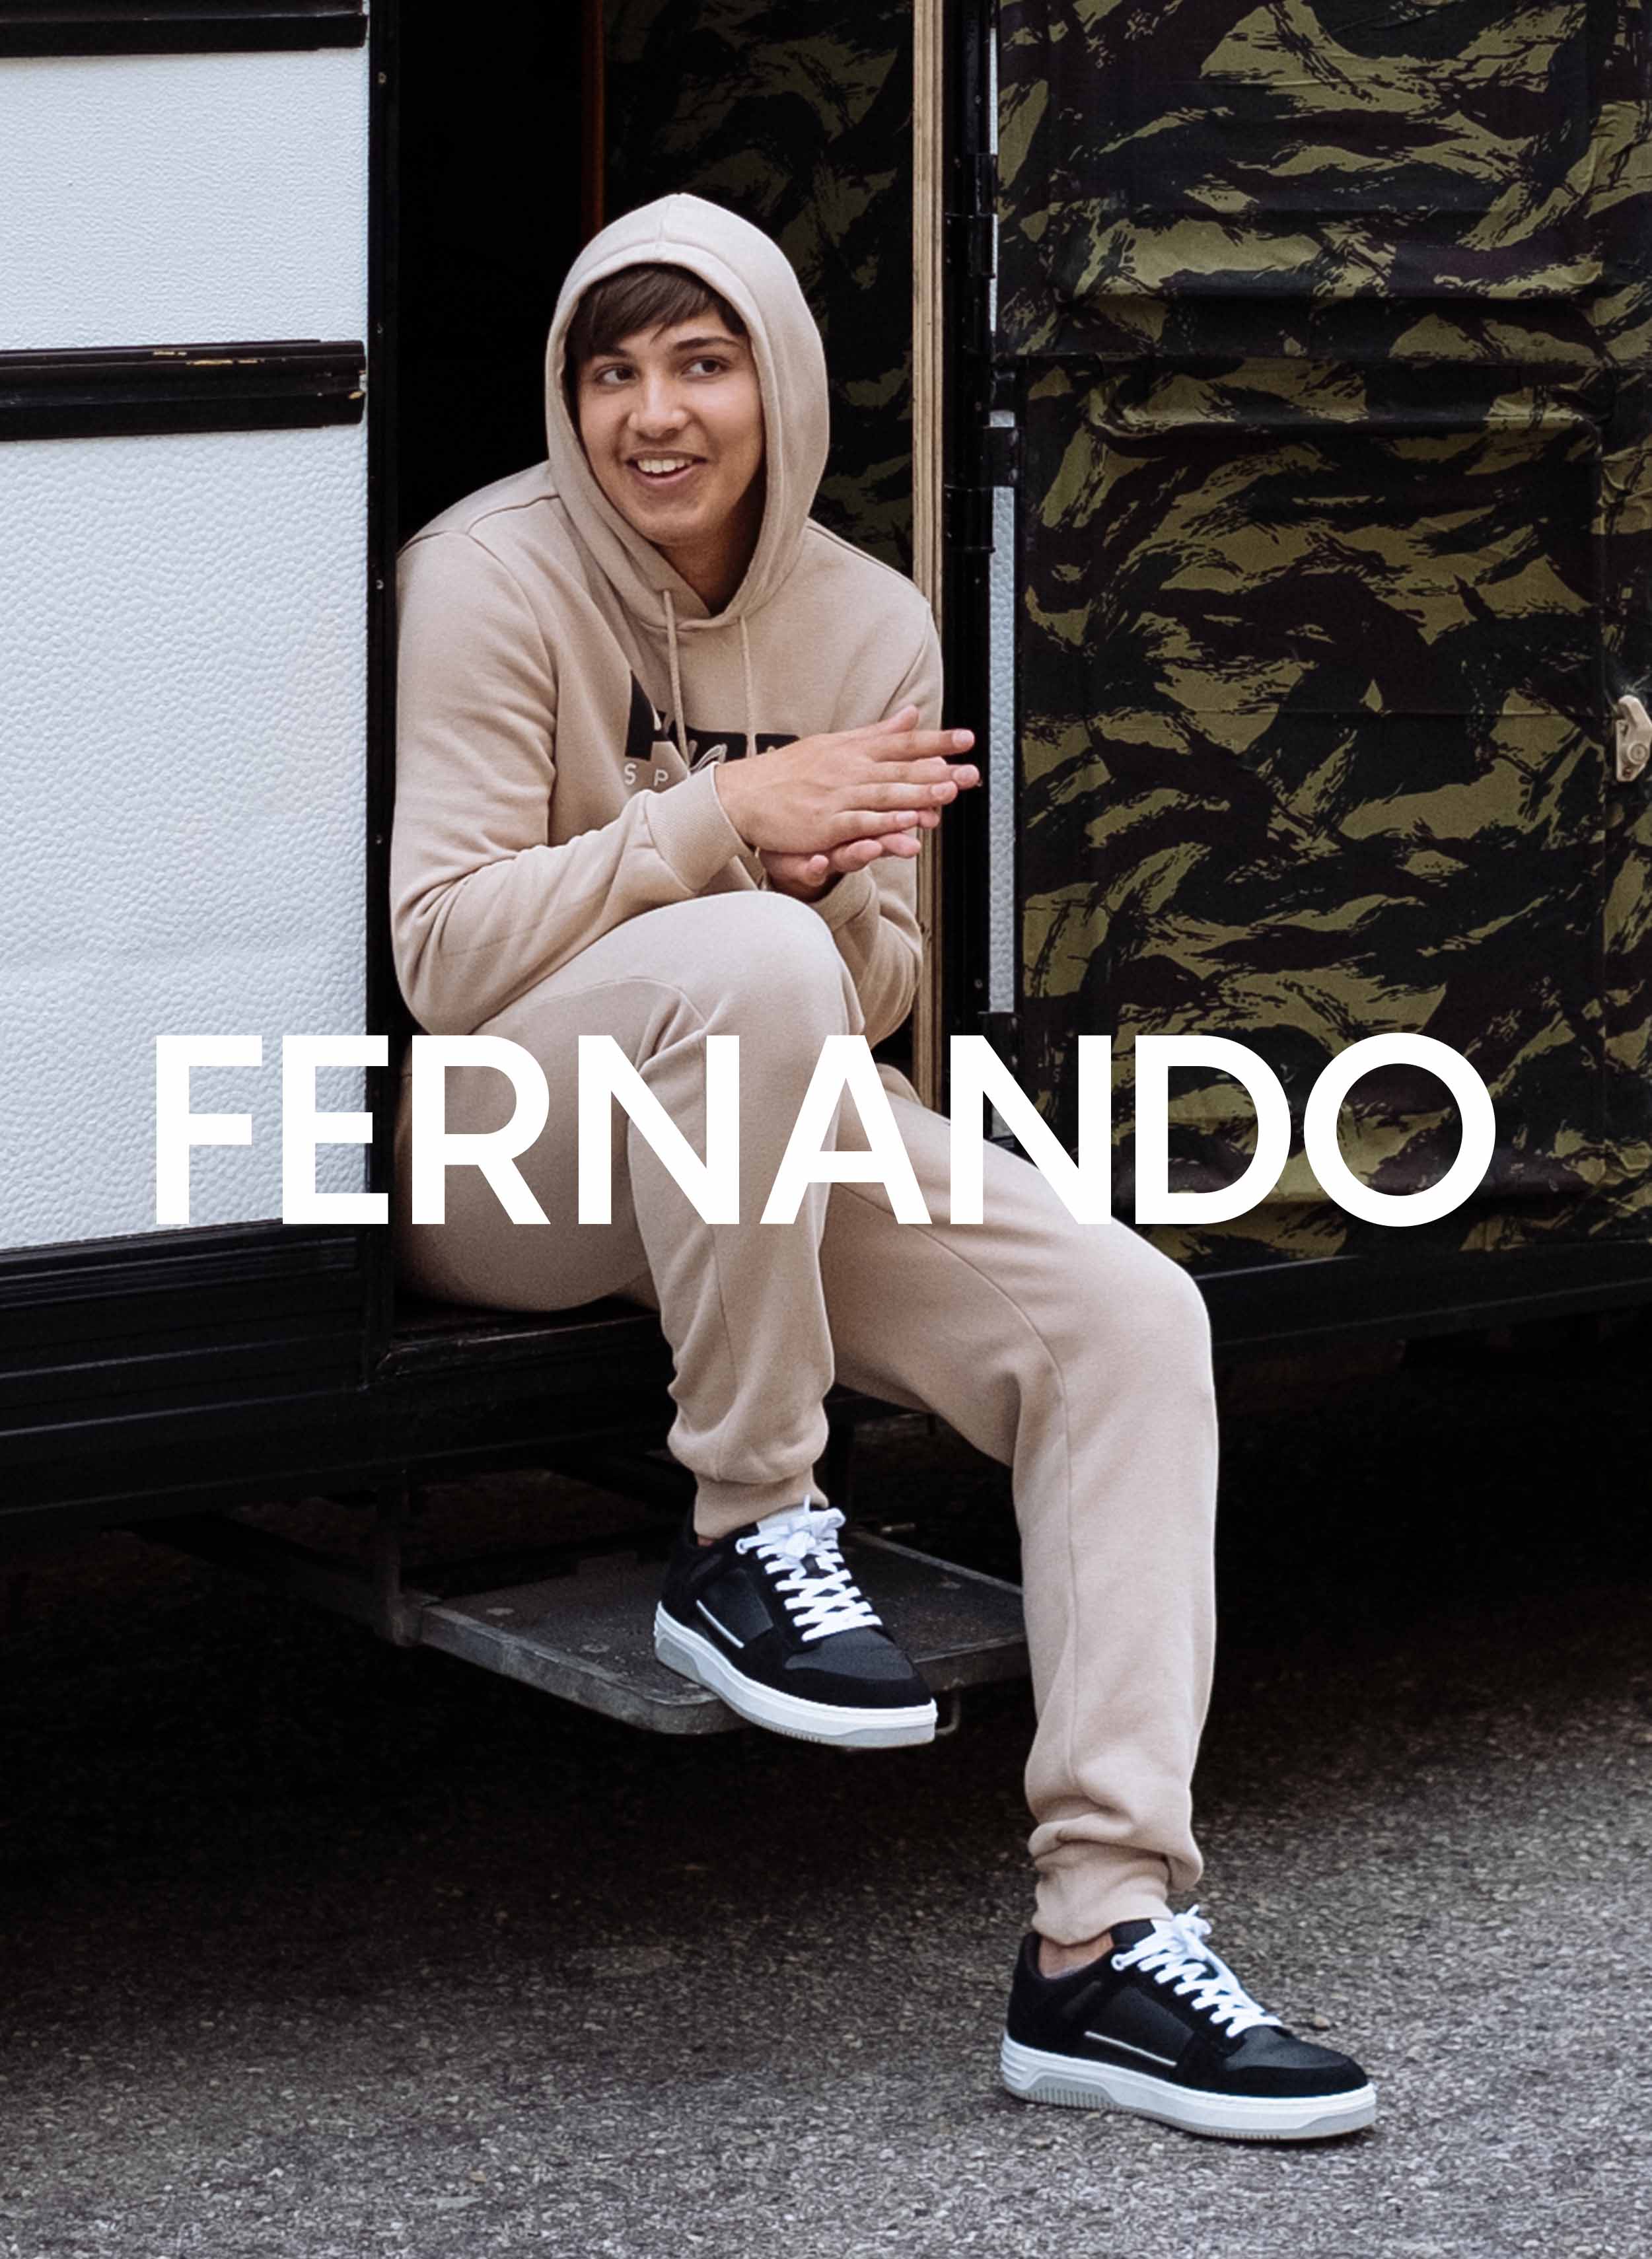 Fernando seduto in un camper, che indossa Diverge sneakers, promuovendo l'impatto sociale e le scarpe personalizzate attraverso il progetto Imagine.